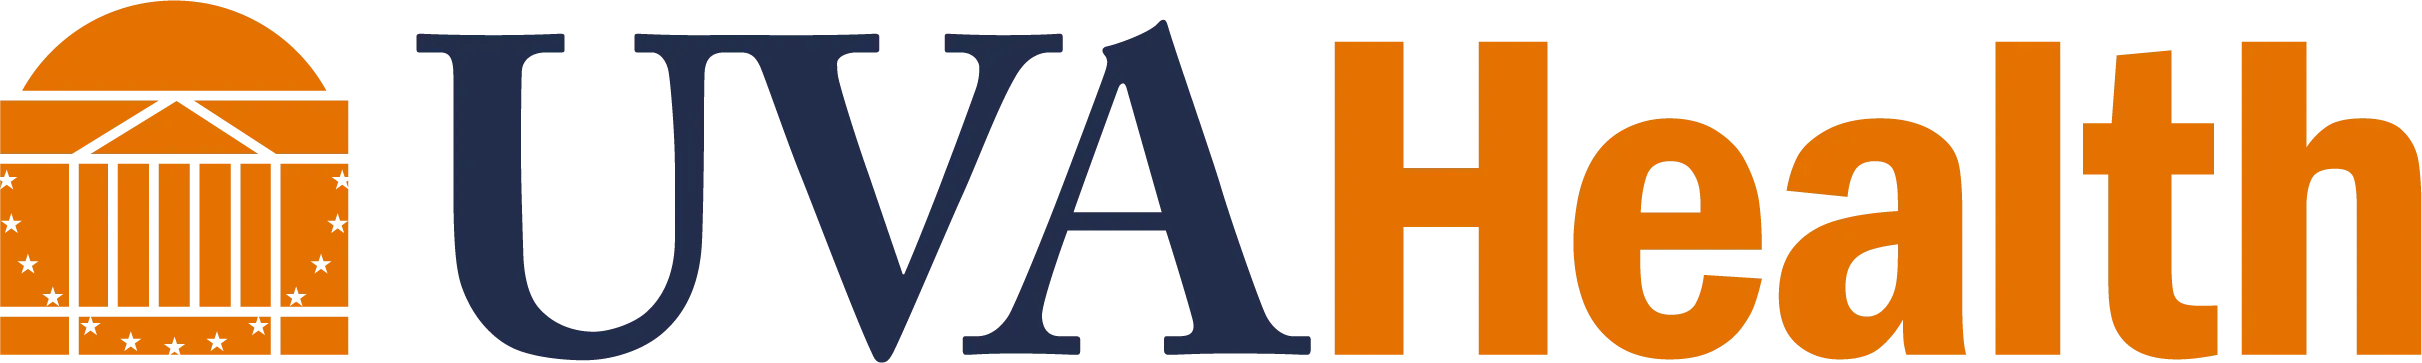 UVA Health logo.